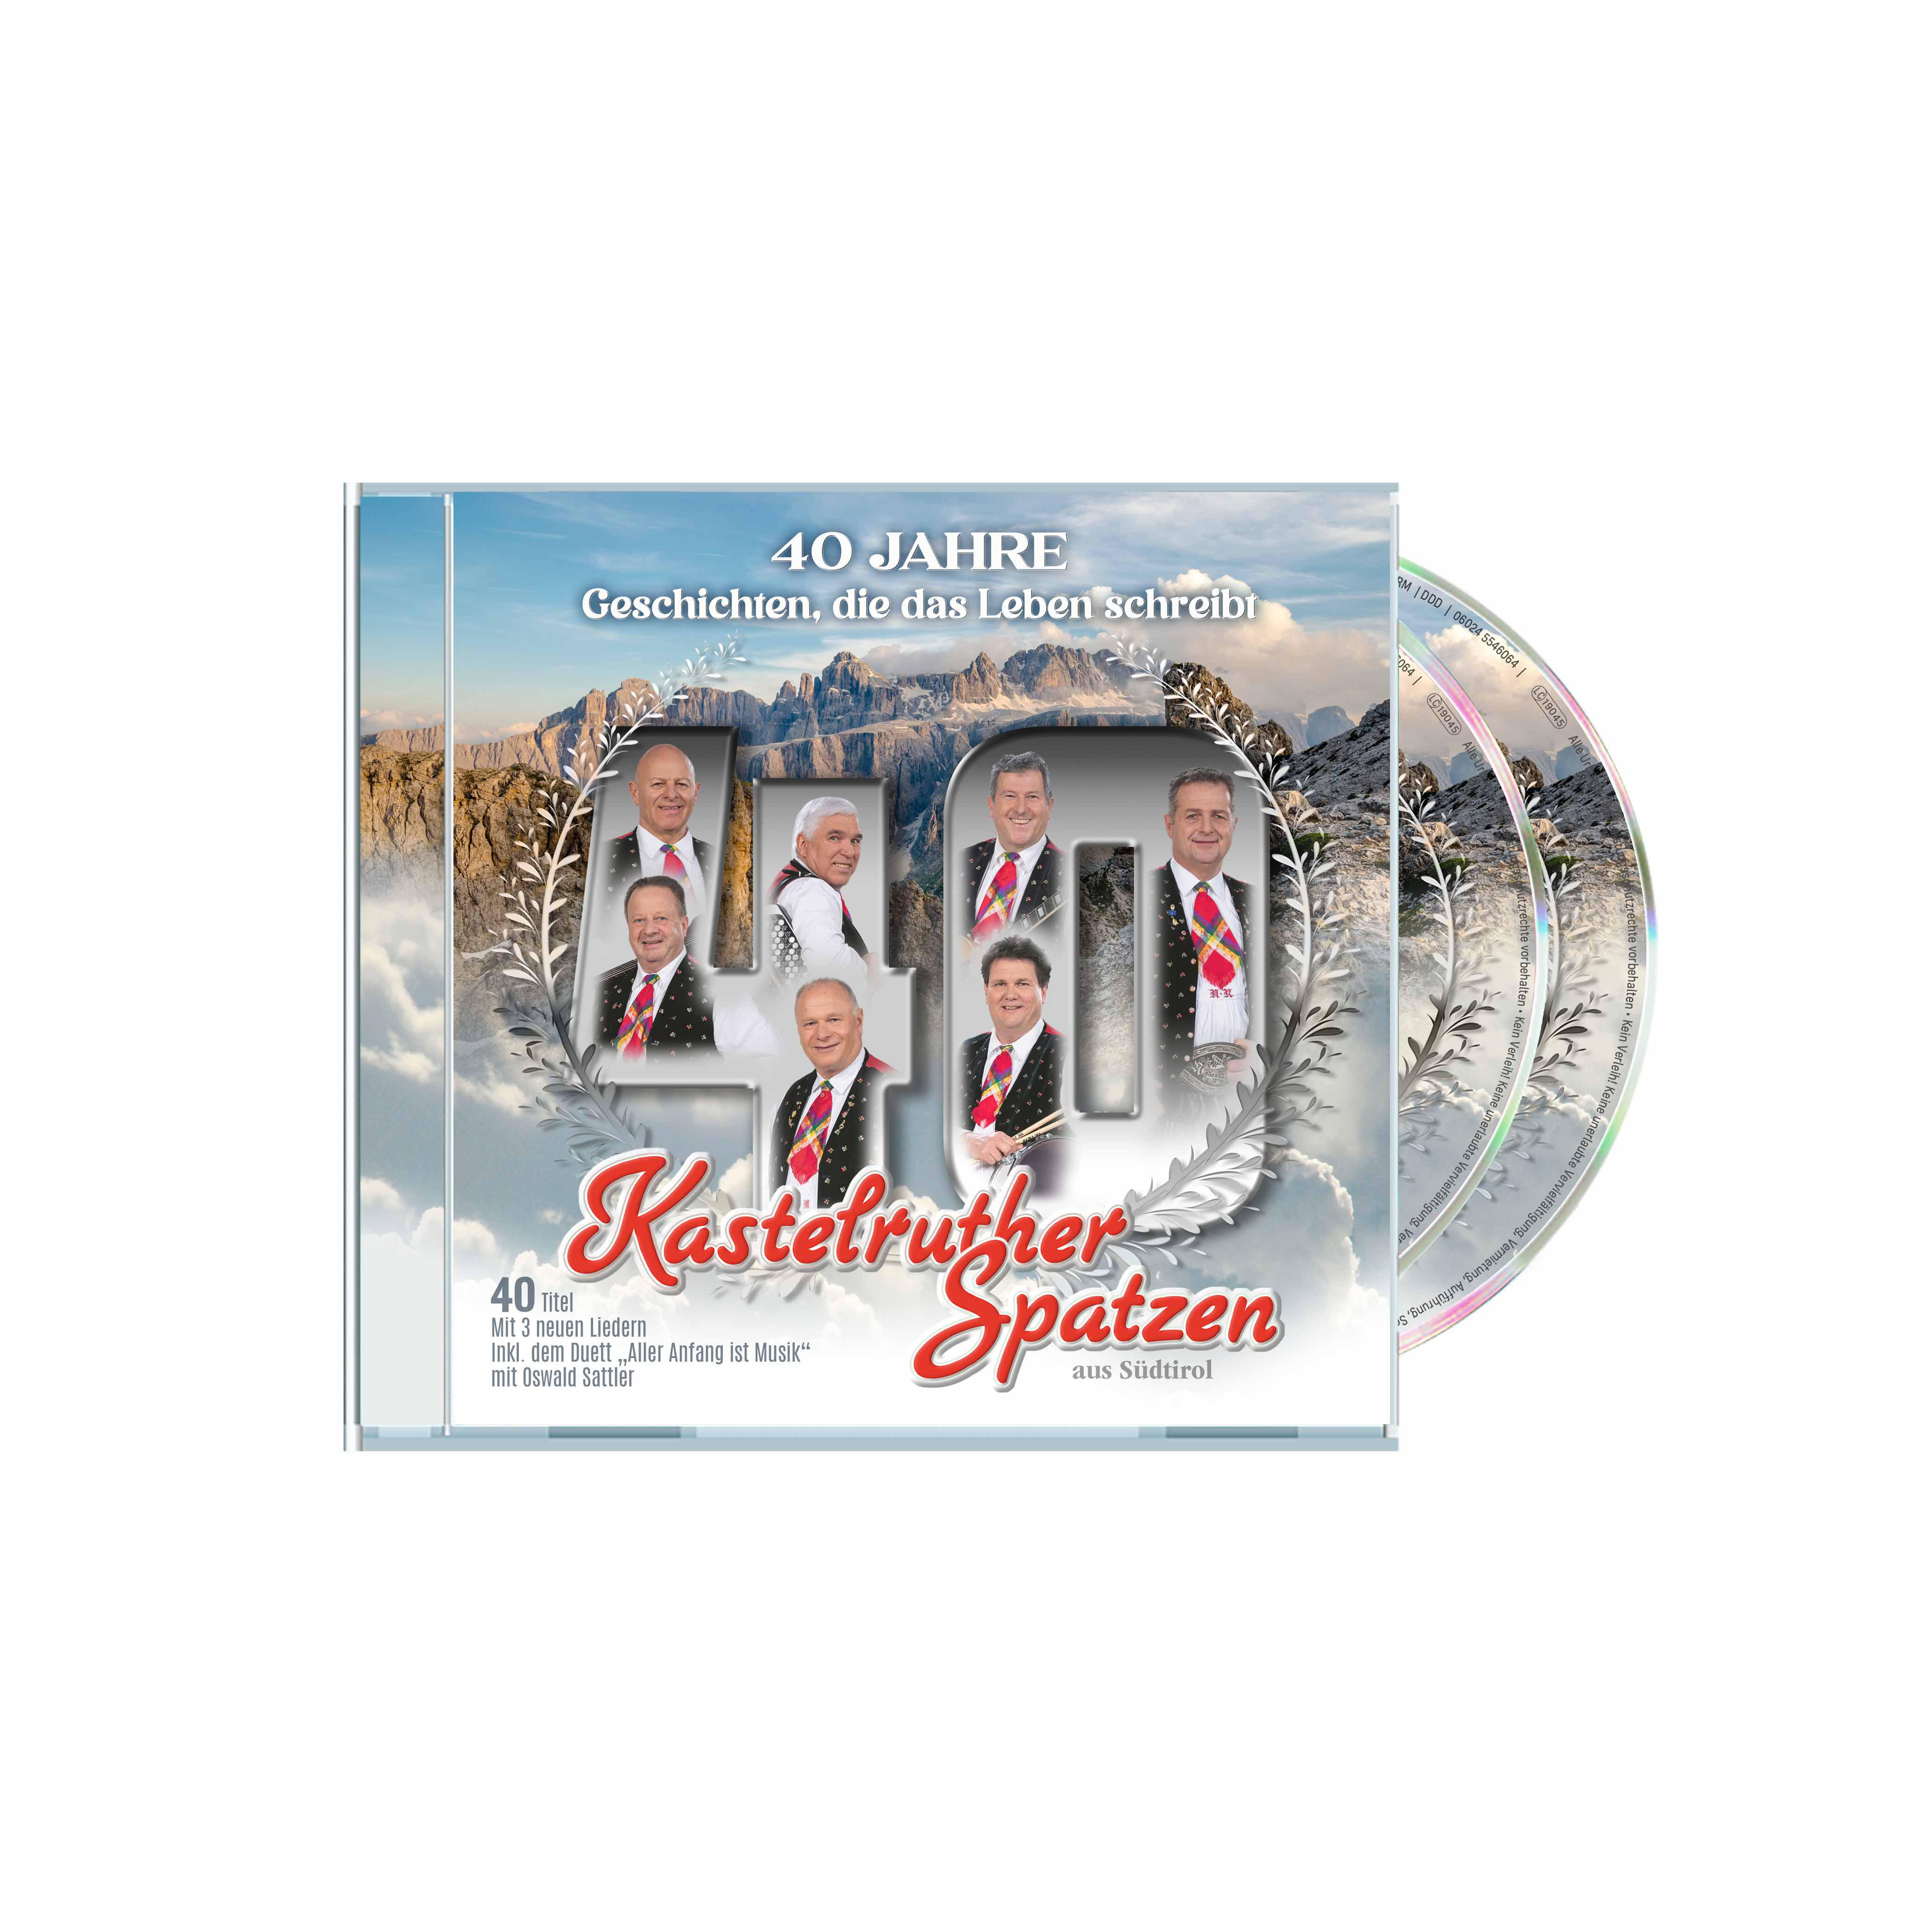 (CD) - Leben 40 Kastelruther Schreibt Jahre-Geschichten,Die Das - Spatzen